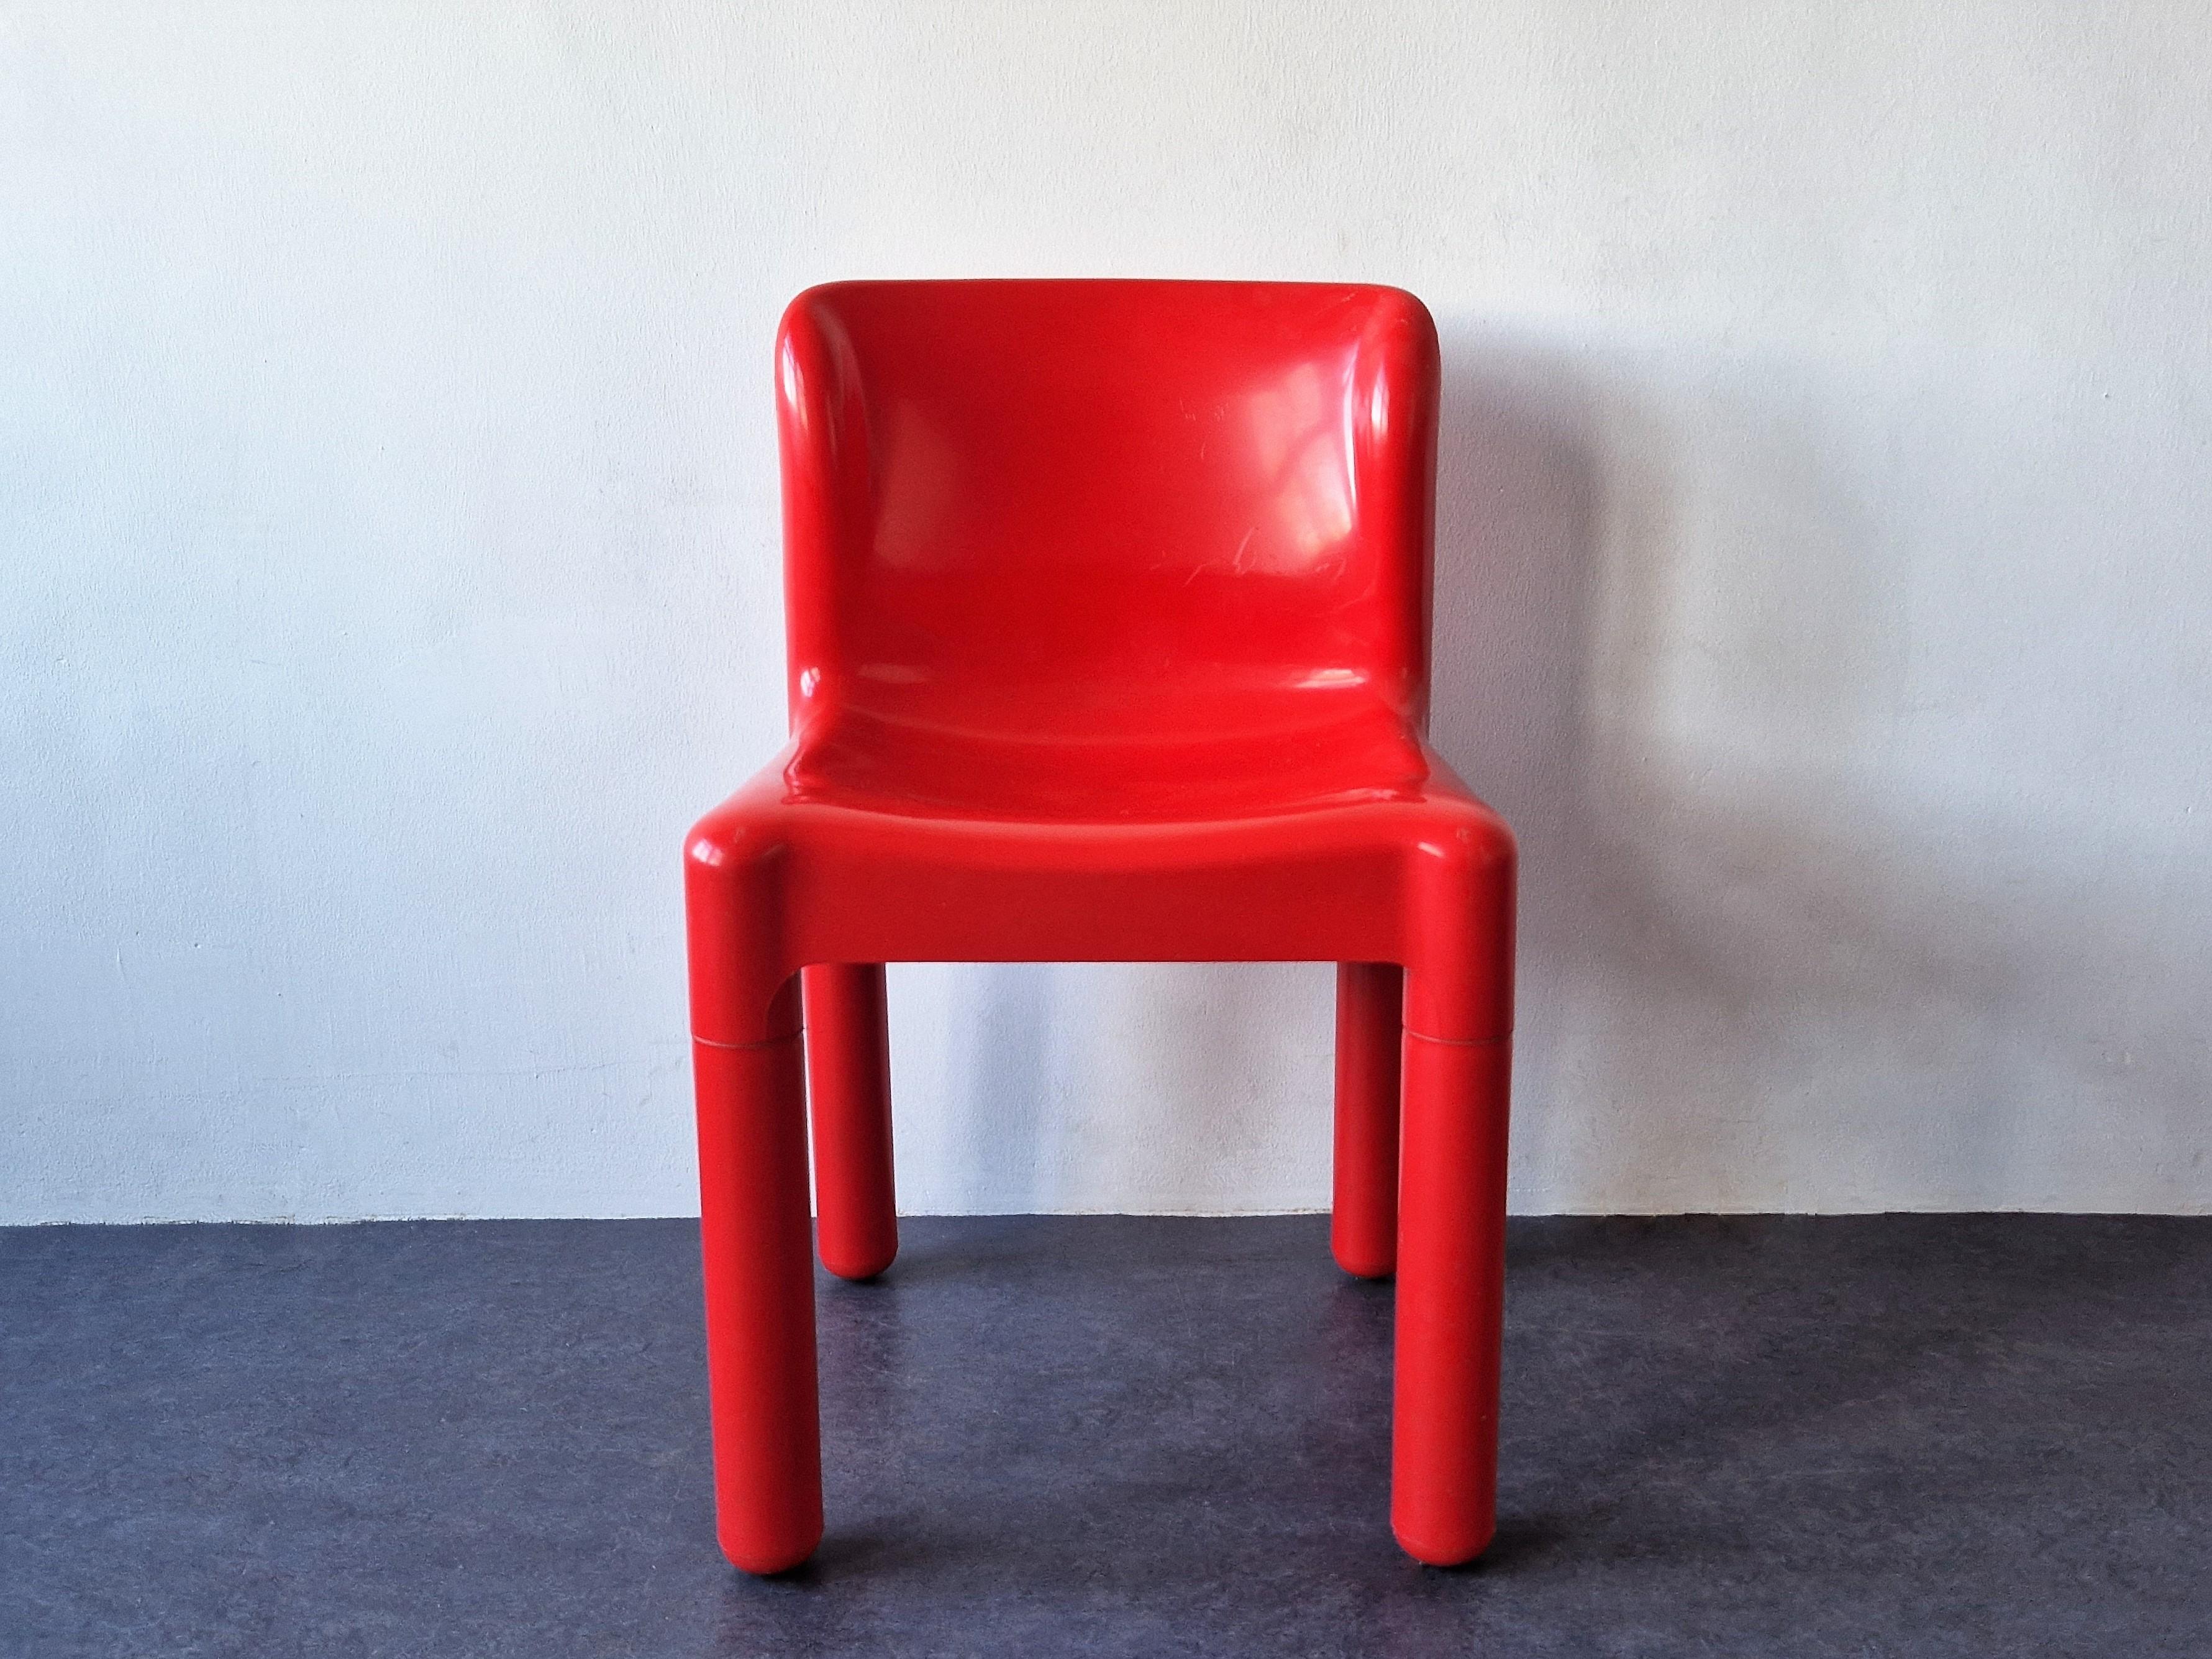 Cette chaise, modèle 4875, a été conçue par Carlo Bartoli pour Kartell au début des années 1970. Il est doté d'un dossier unique avec quatre pieds vissables, ce qui en fait le premier siège en polypropylène moulé par injection au monde. Cette chaise